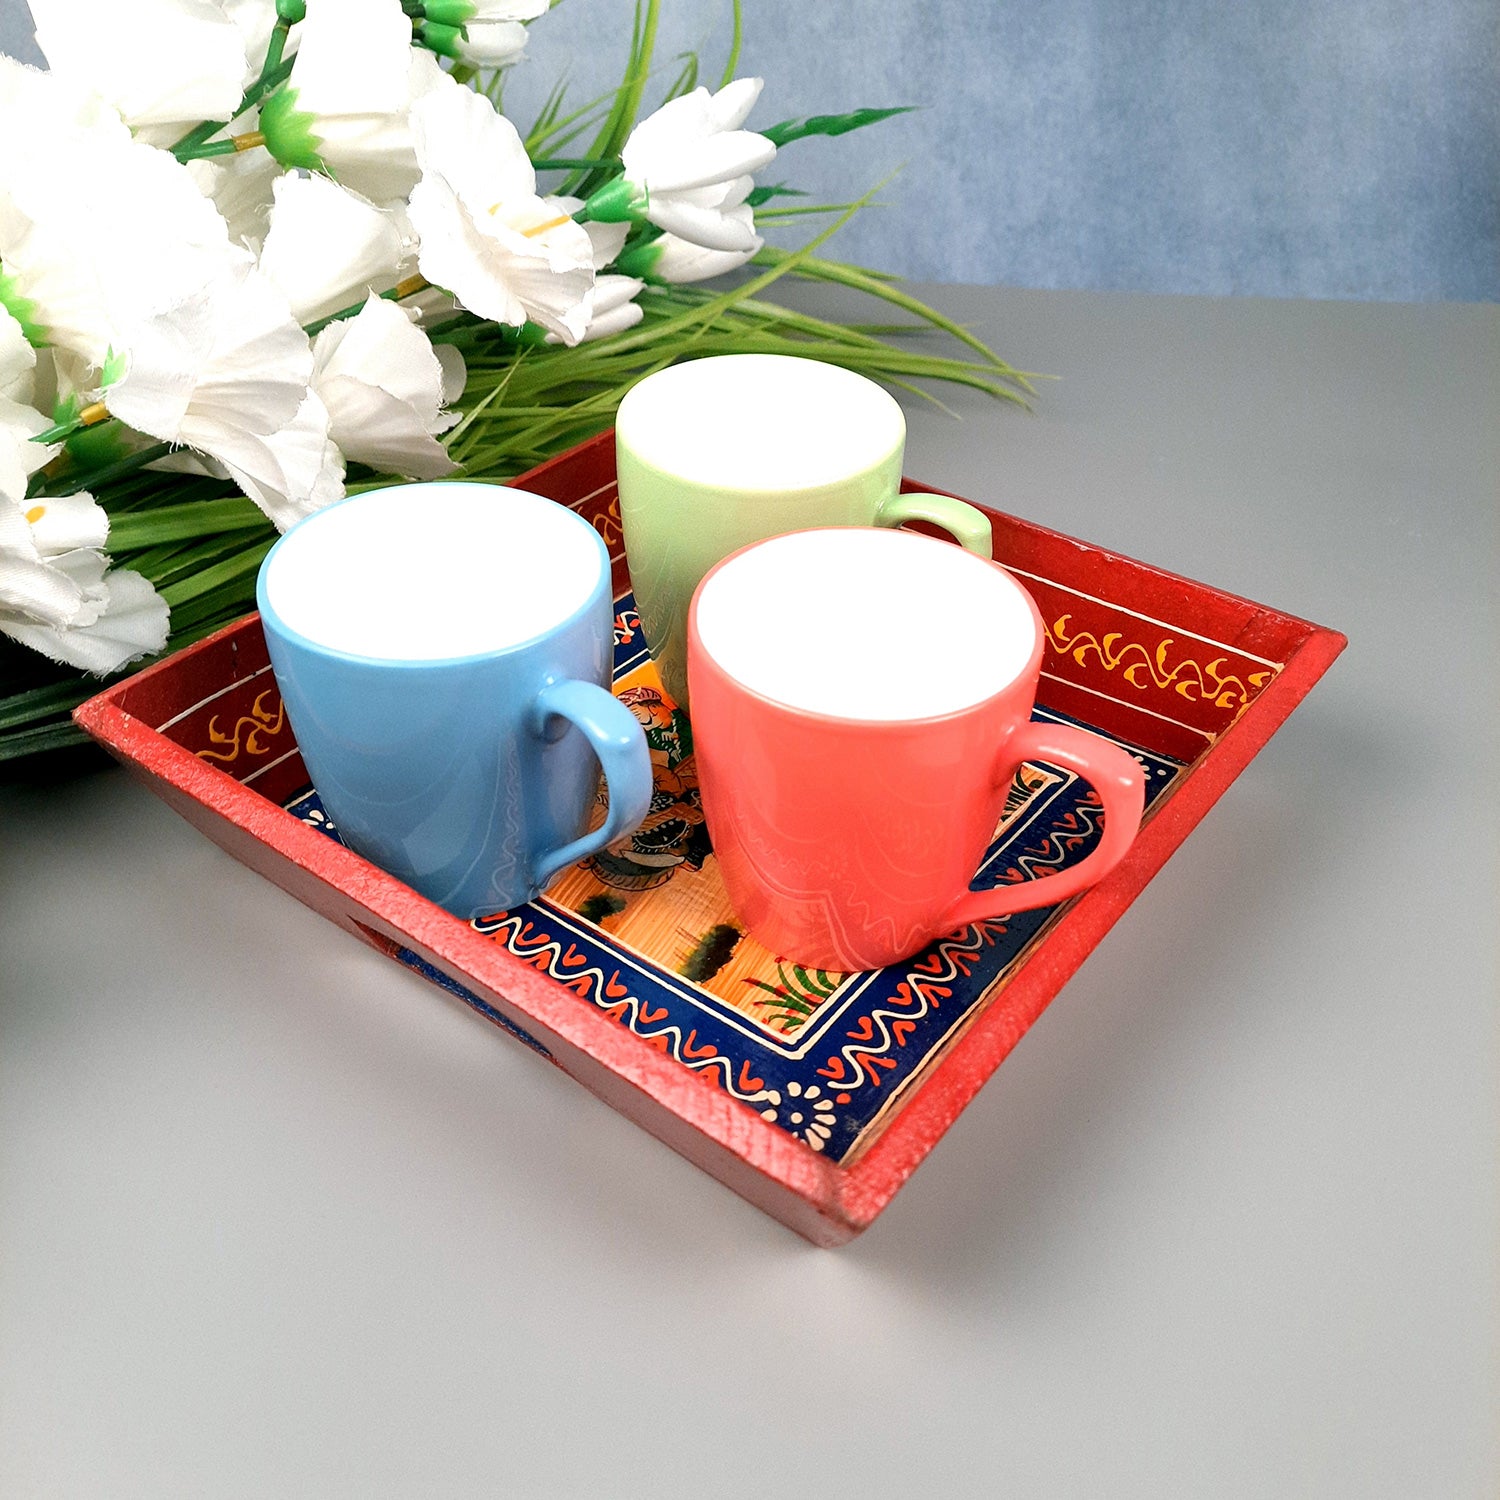 Wooden Serving Tray Set | Tea & Snacks Serving Platter - for Home, Dining Table, Kitchen Decor - (Wood, Red) (Set of 3)- Apkamart